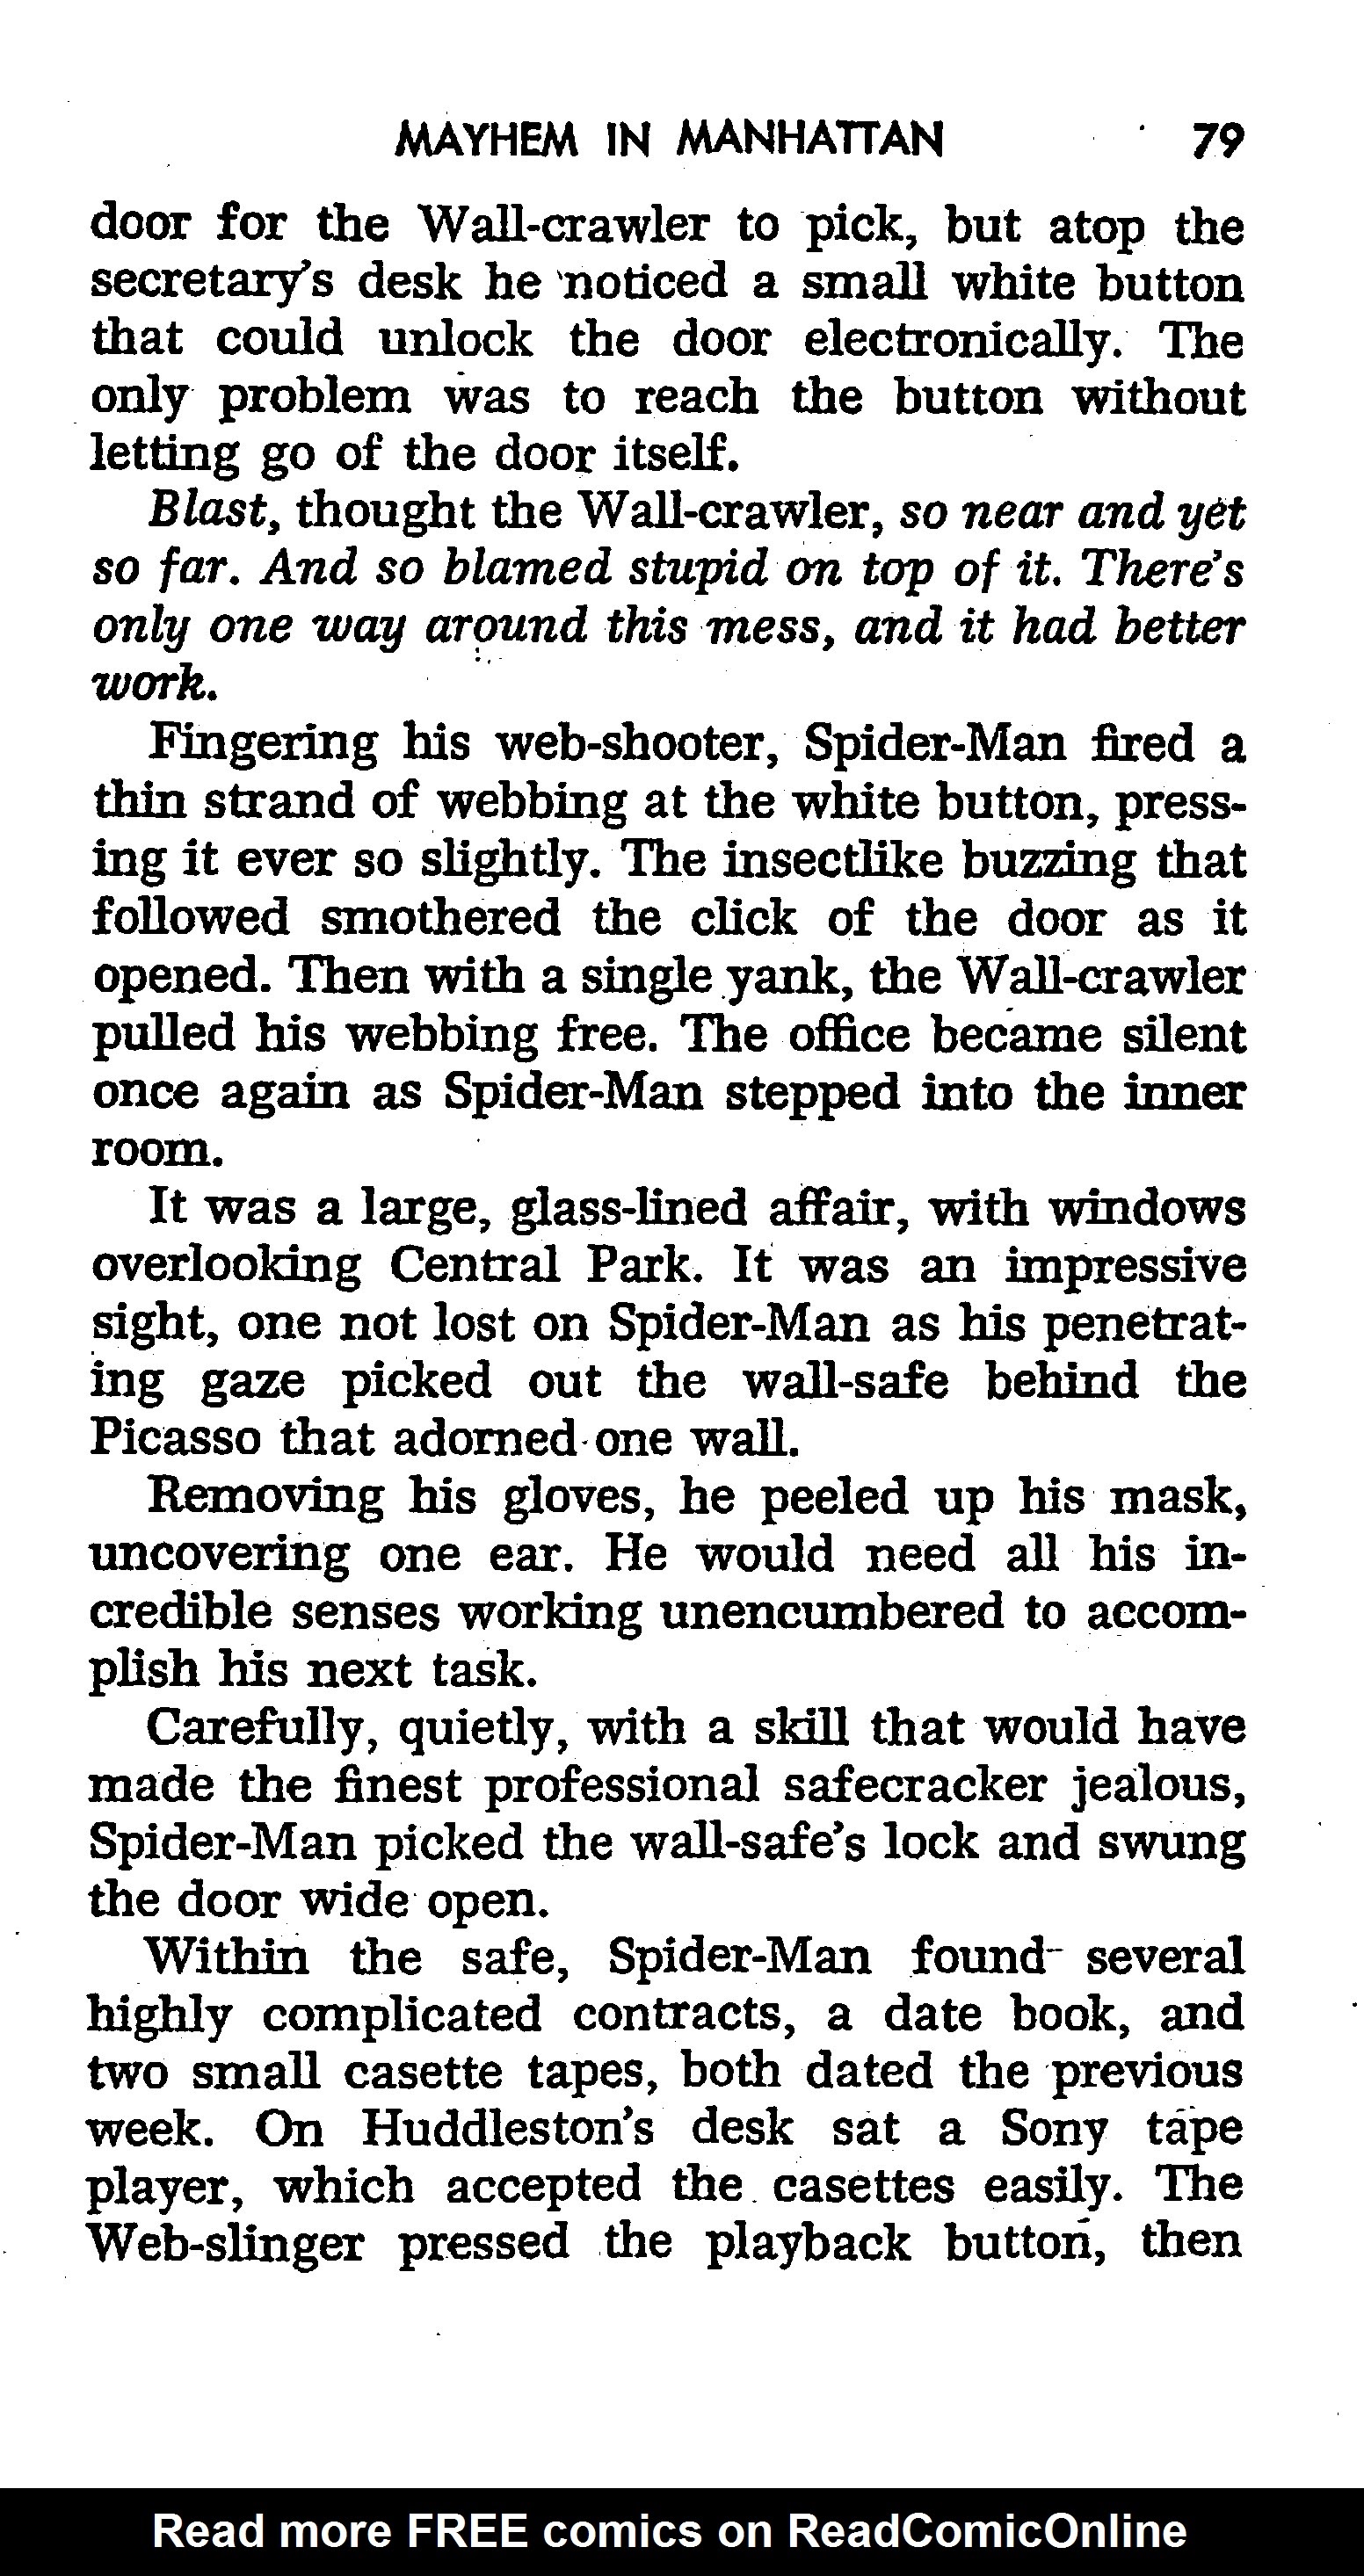 Read online The Amazing Spider-Man: Mayhem in Manhattan comic -  Issue # TPB (Part 1) - 80